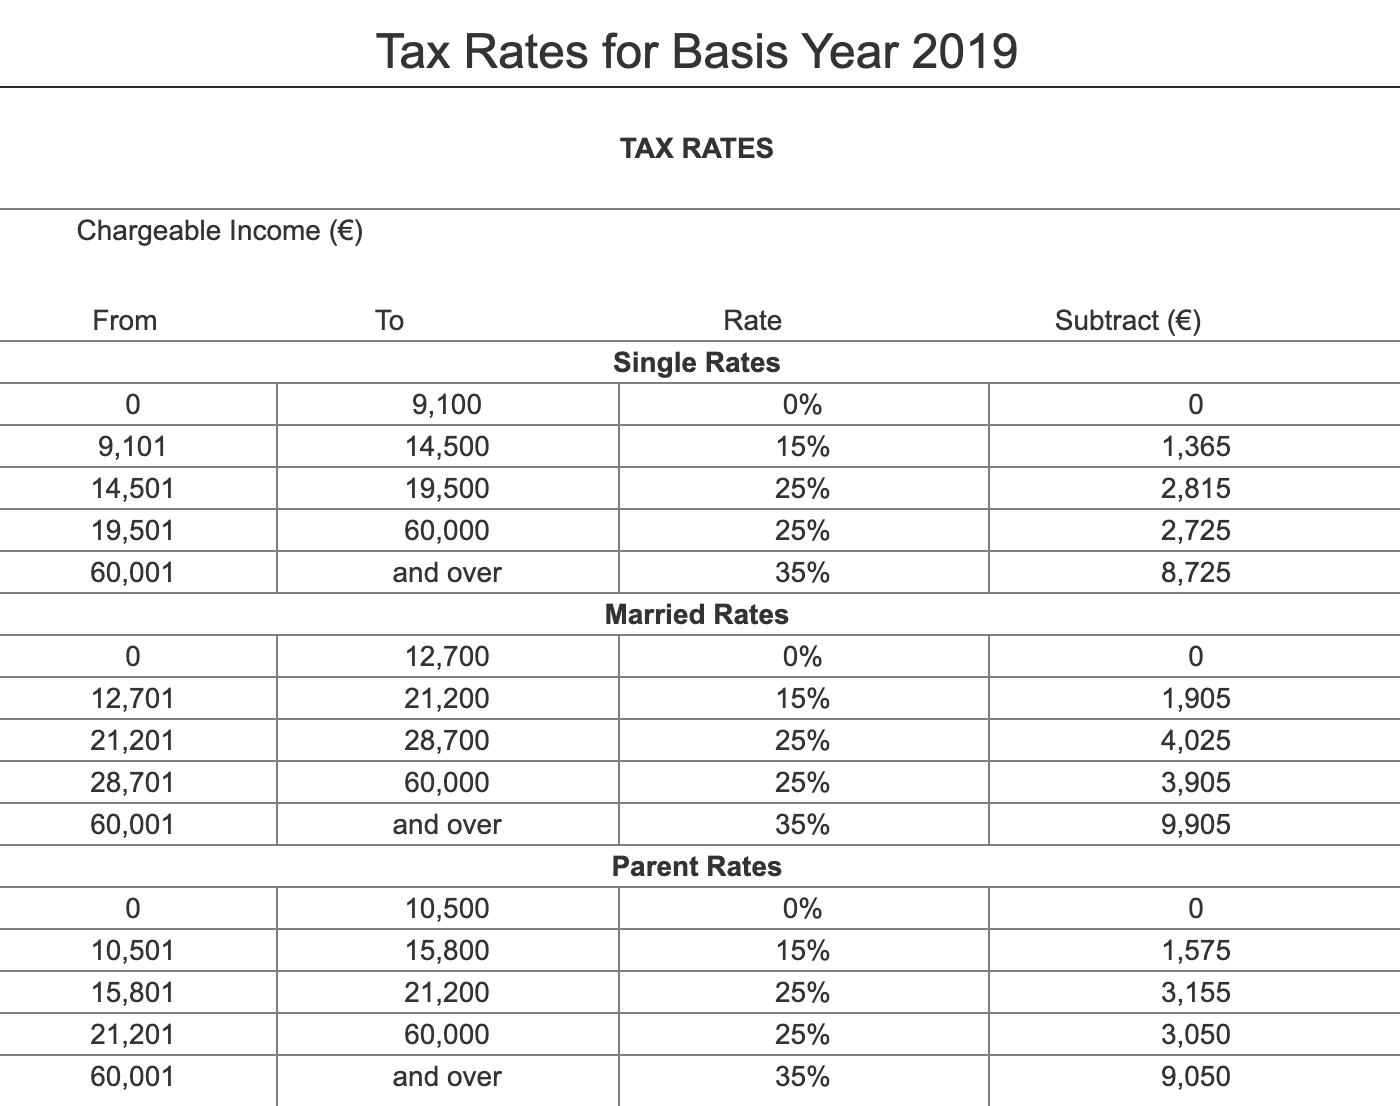 Налоговые ставки 2019 года для одиноких, женатых и родителей. Subtract — это налоговый вычет